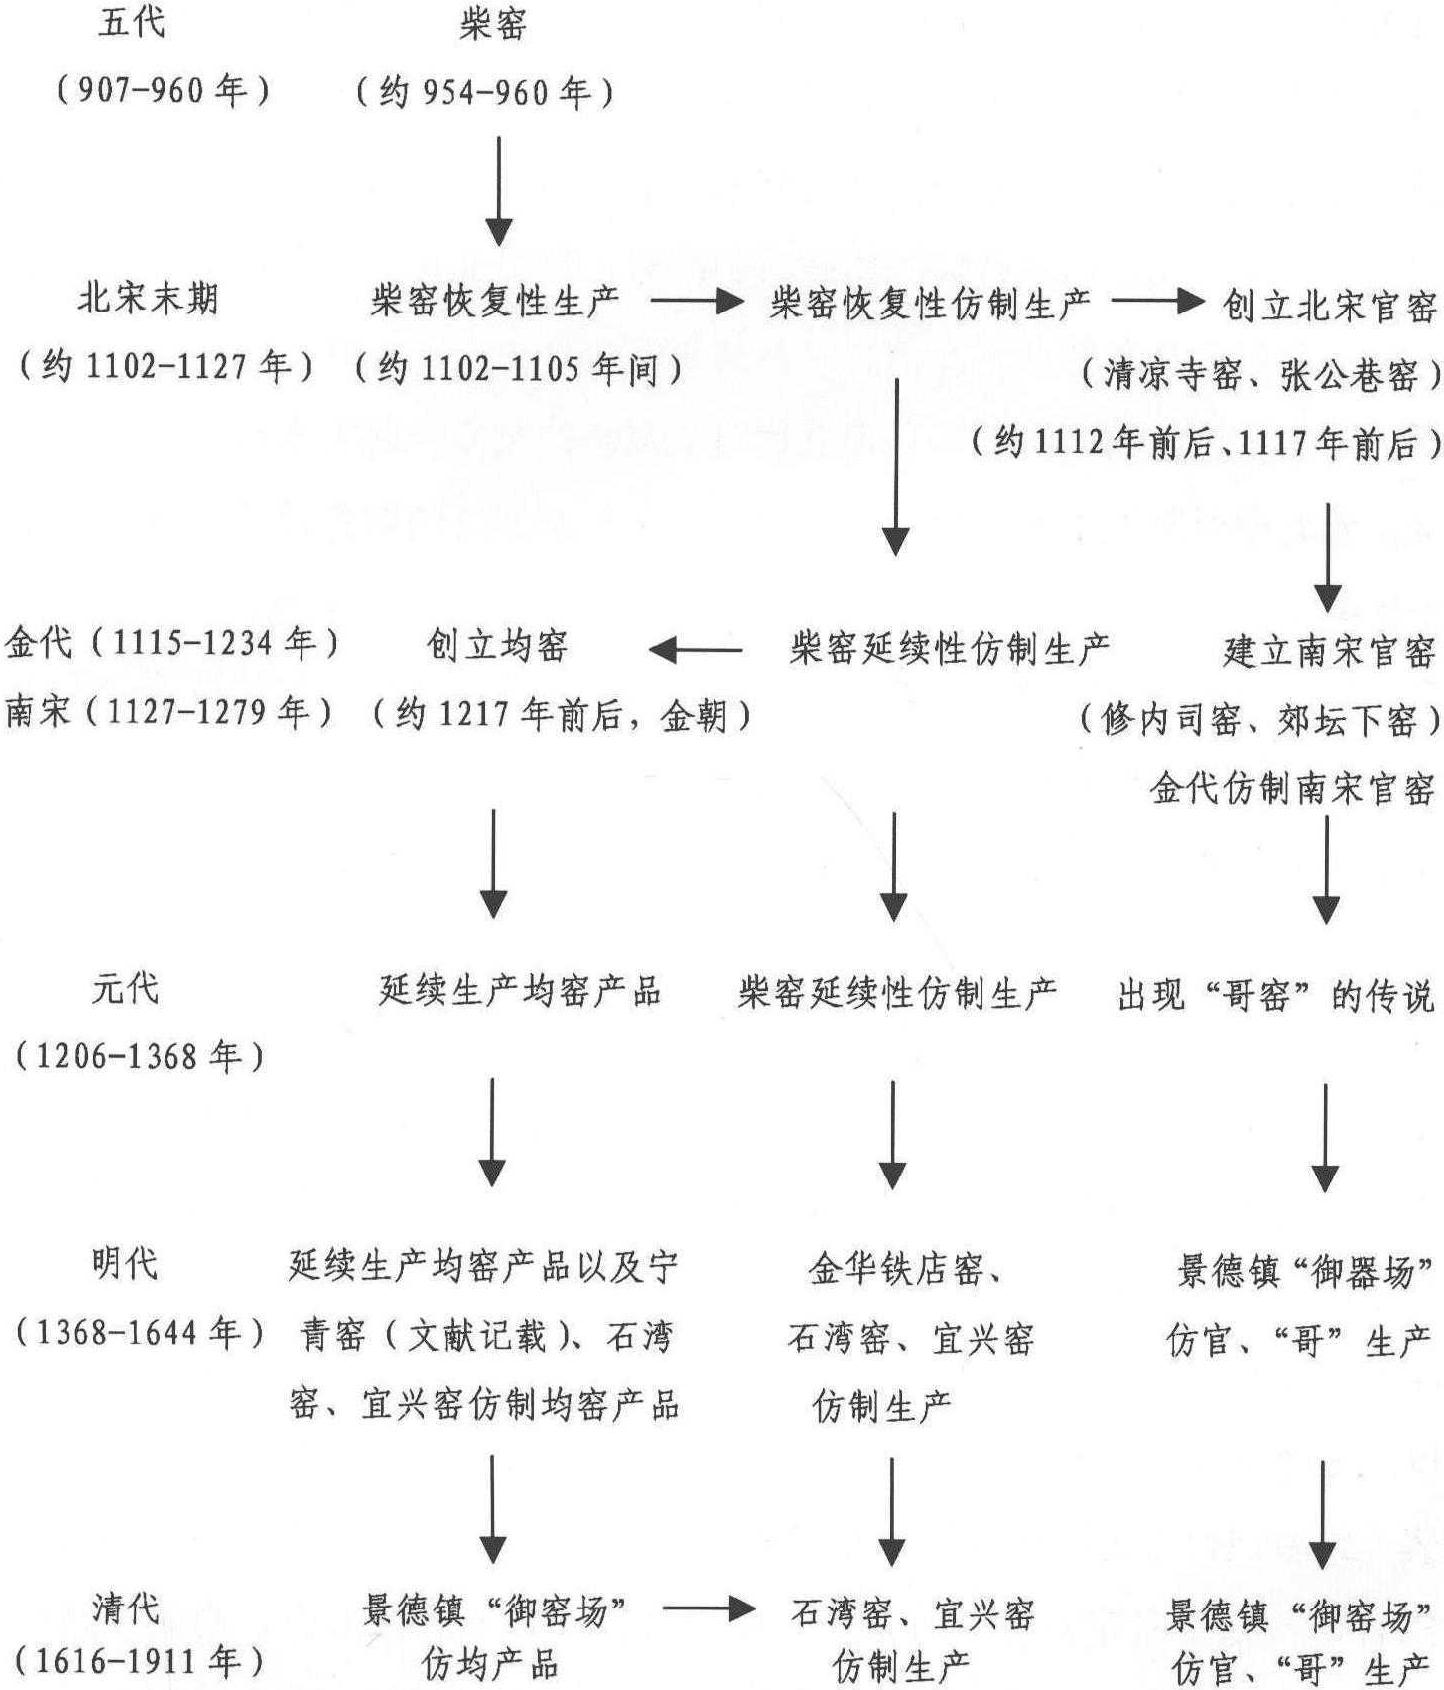 附表: 柴窑对中国古代陶瓷生产所形成的影响